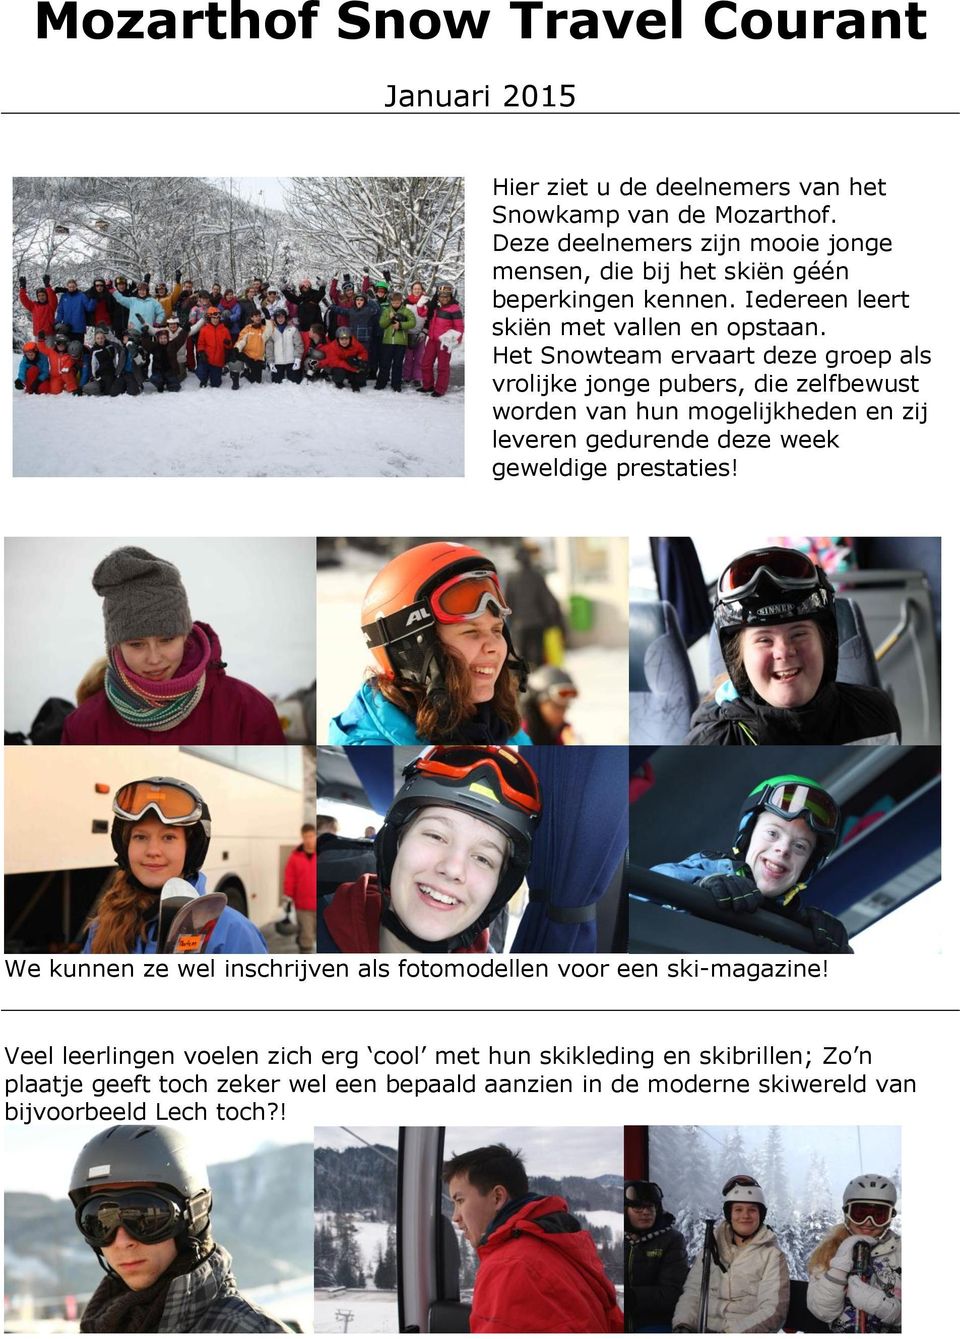 Het Snowteam ervaart deze groep als vrolijke jonge pubers, die zelfbewust worden van hun mogelijkheden en zij leveren gedurende deze week geweldige prestaties!